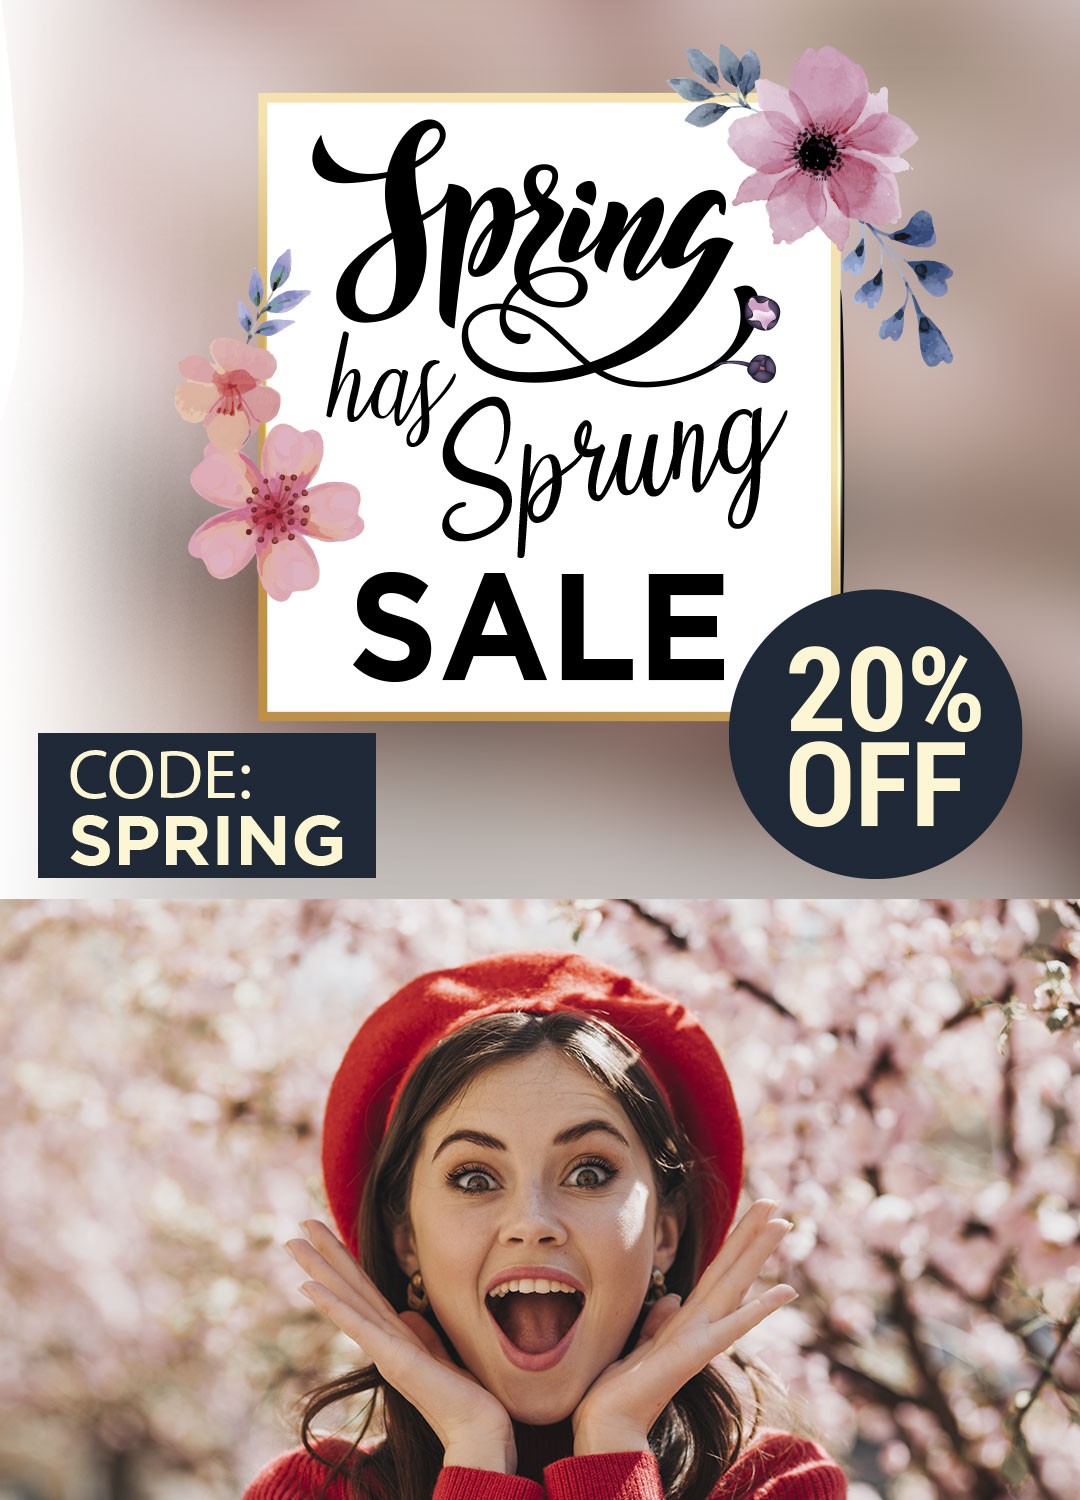 Belle Fever Spring Has Sprung Sale